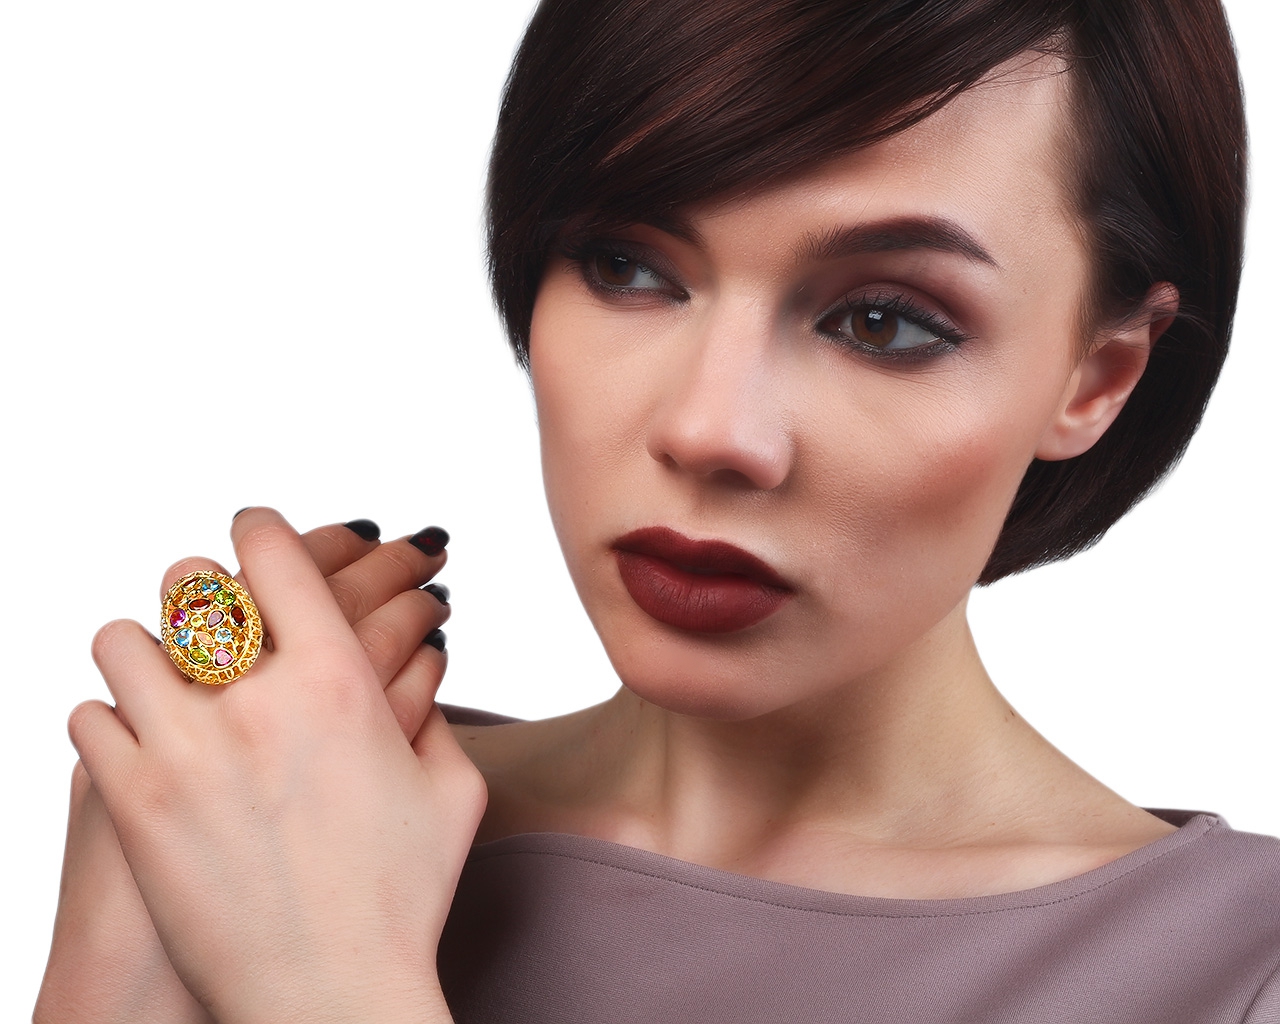 Итальянское золотое кольцо с цветными камнями Silvex